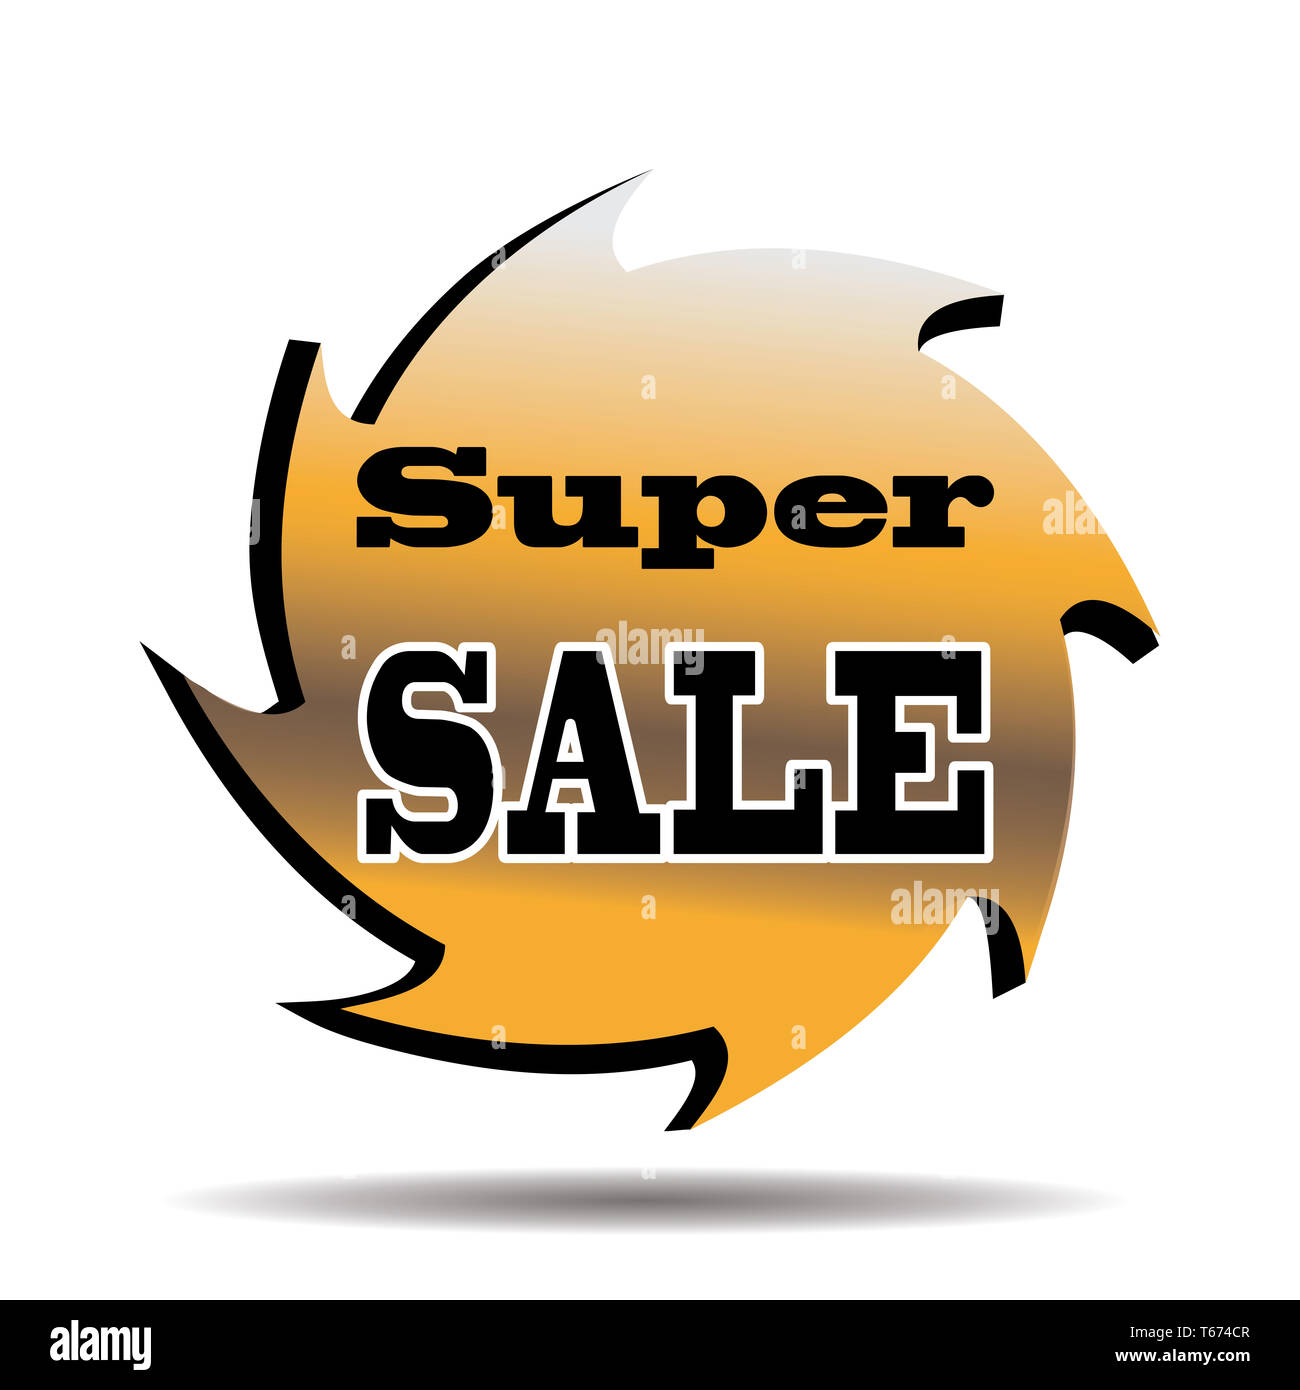 Super sale tag Stock Photo